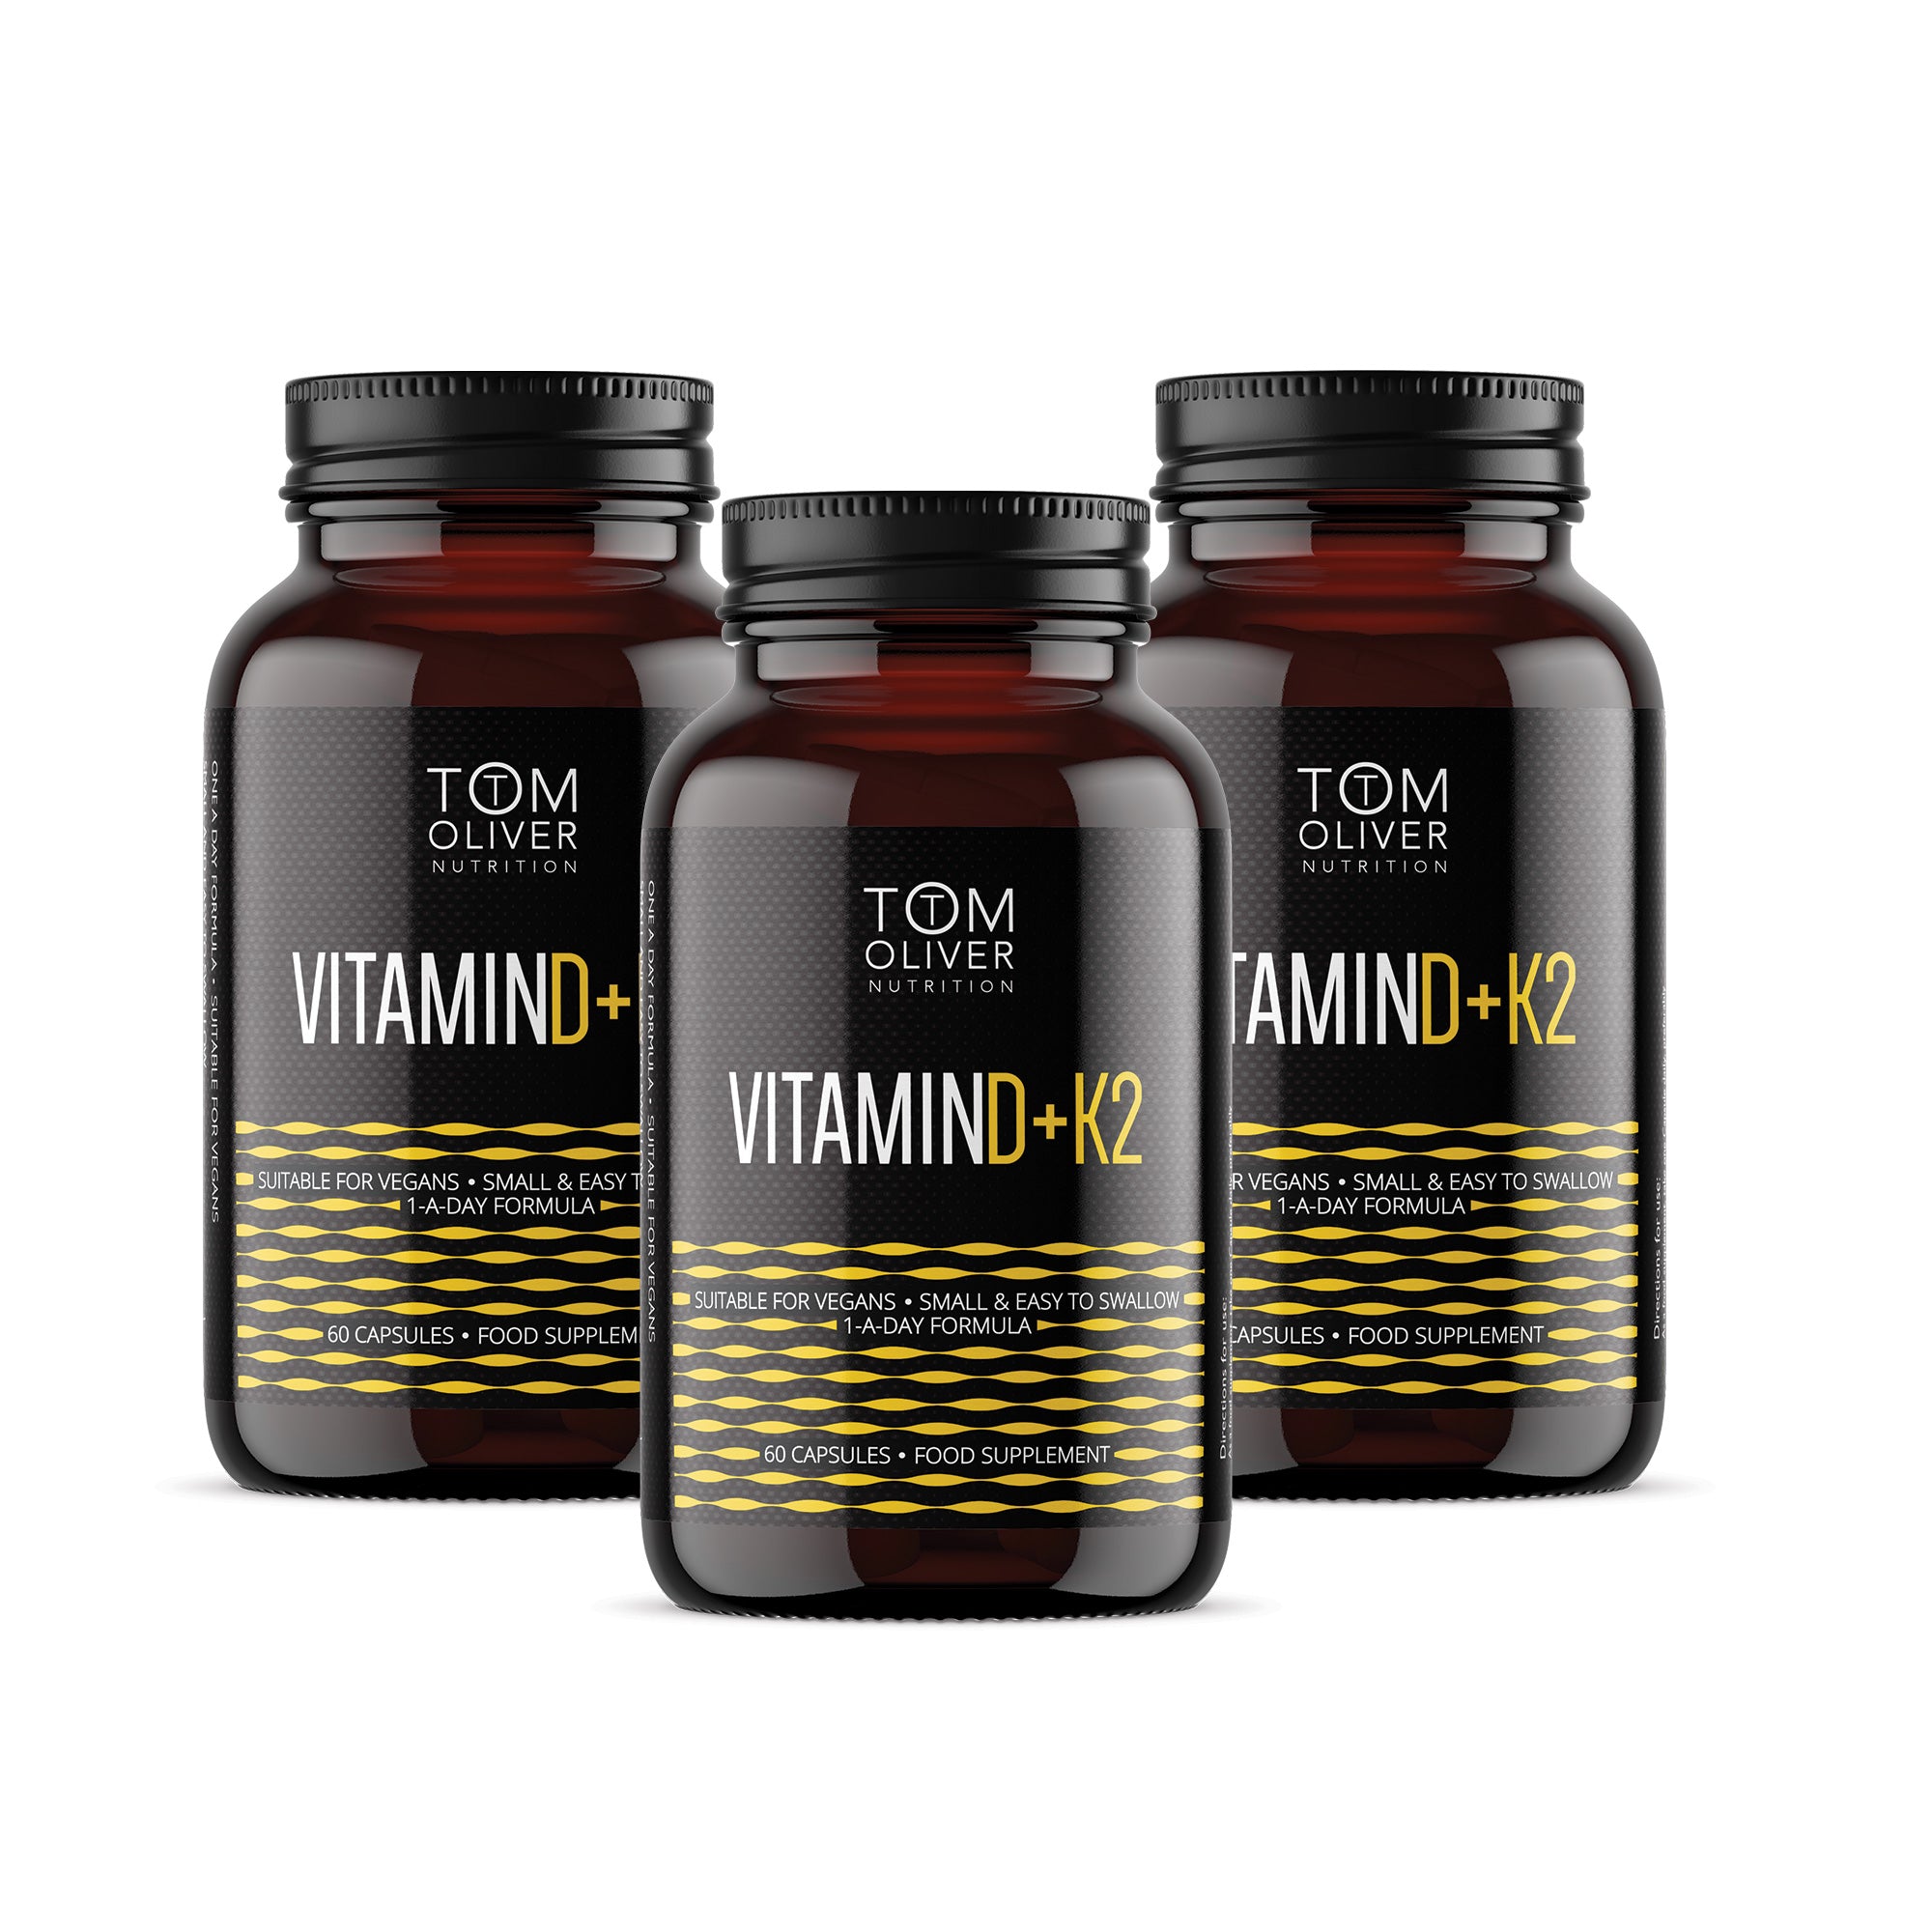 Vitamin D K2 Offer Pack (3 Bottles)